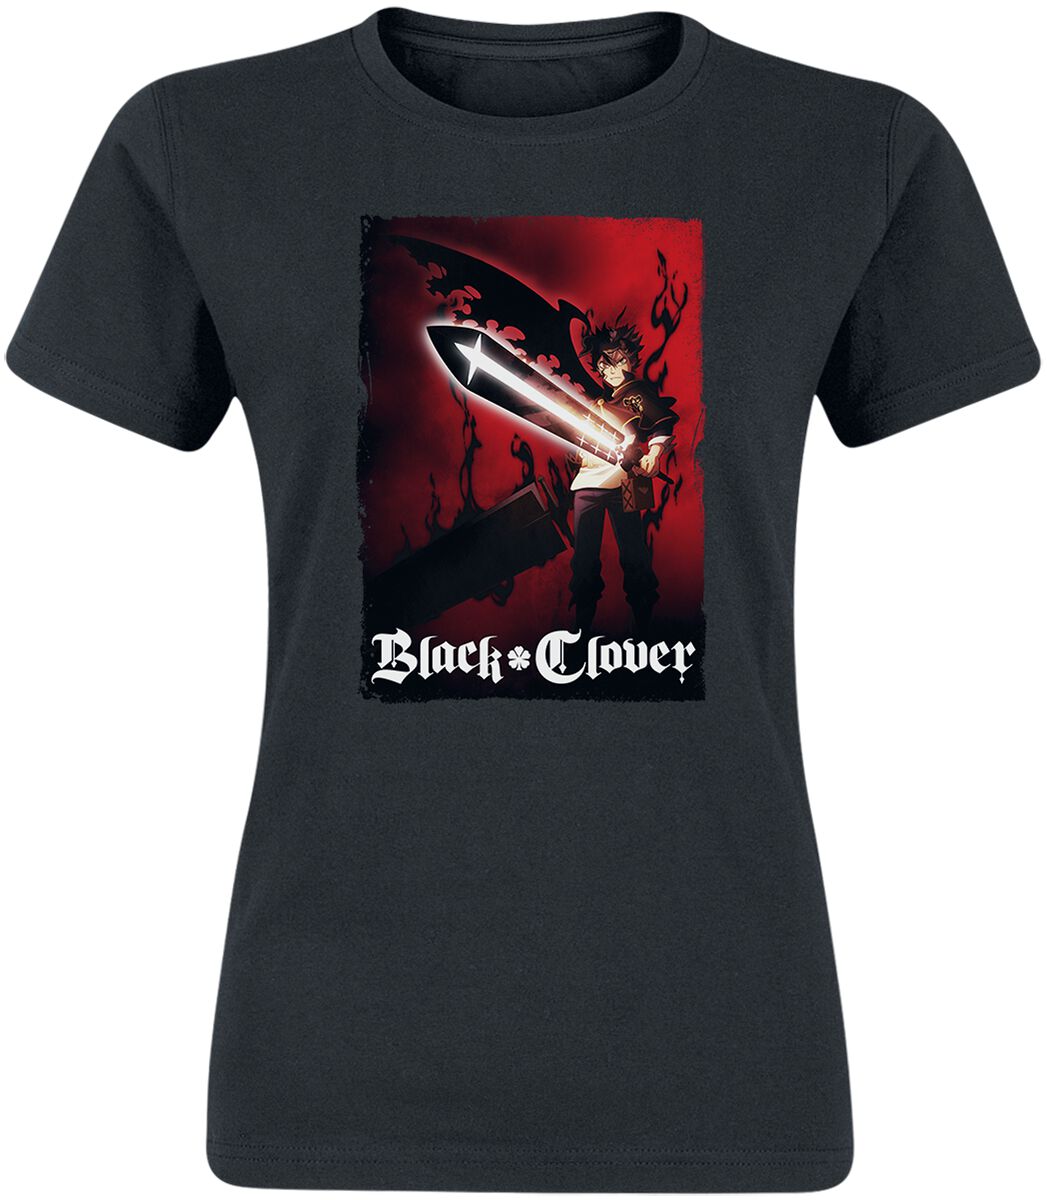 T-Shirt Manches courtes de Black Clover - Find Your Power - S à XXL - pour Femme - noir